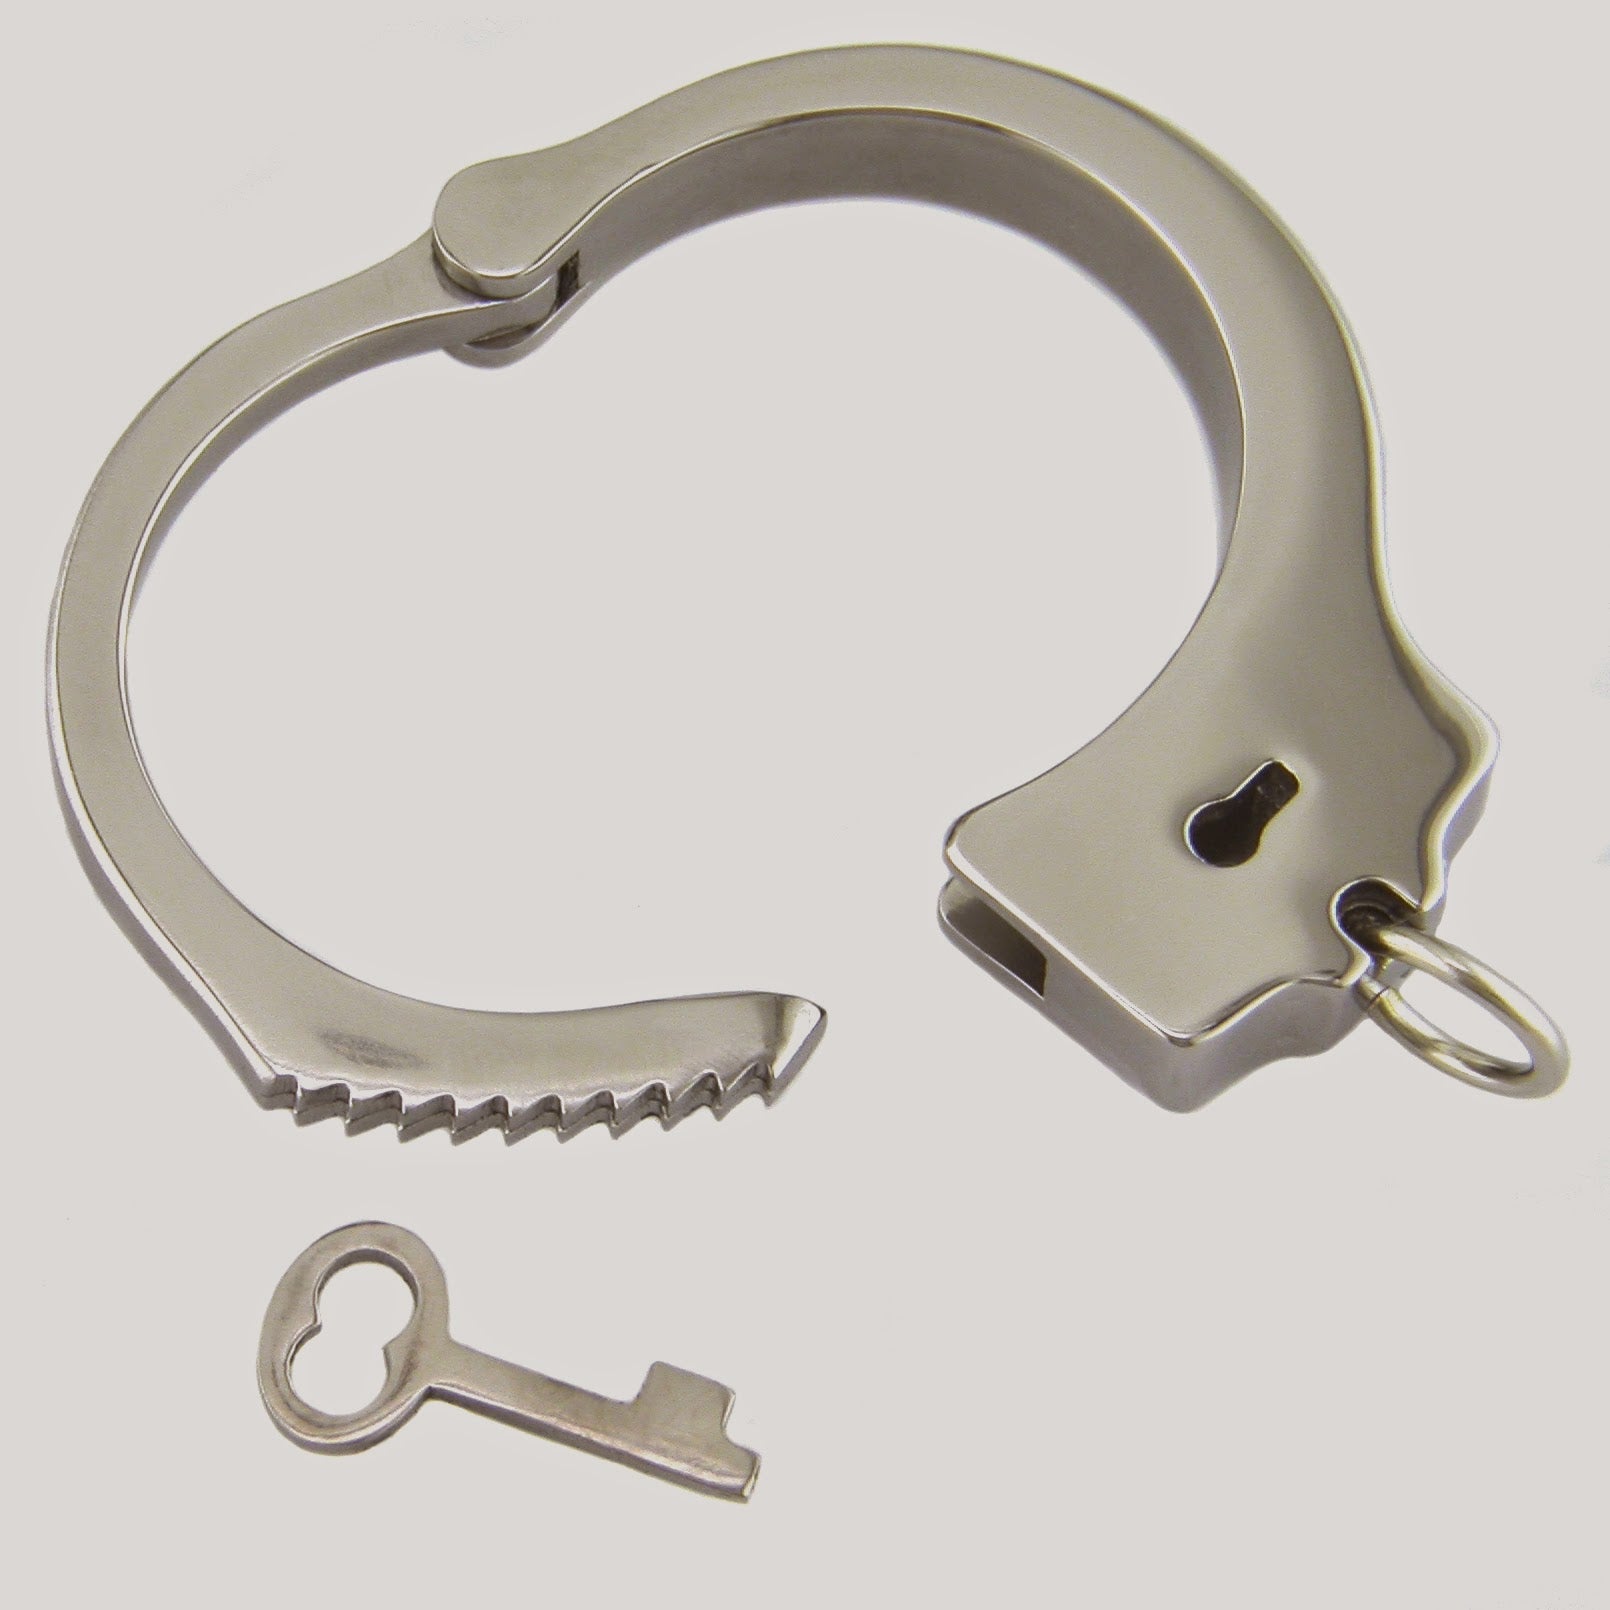 Handcuff Ring